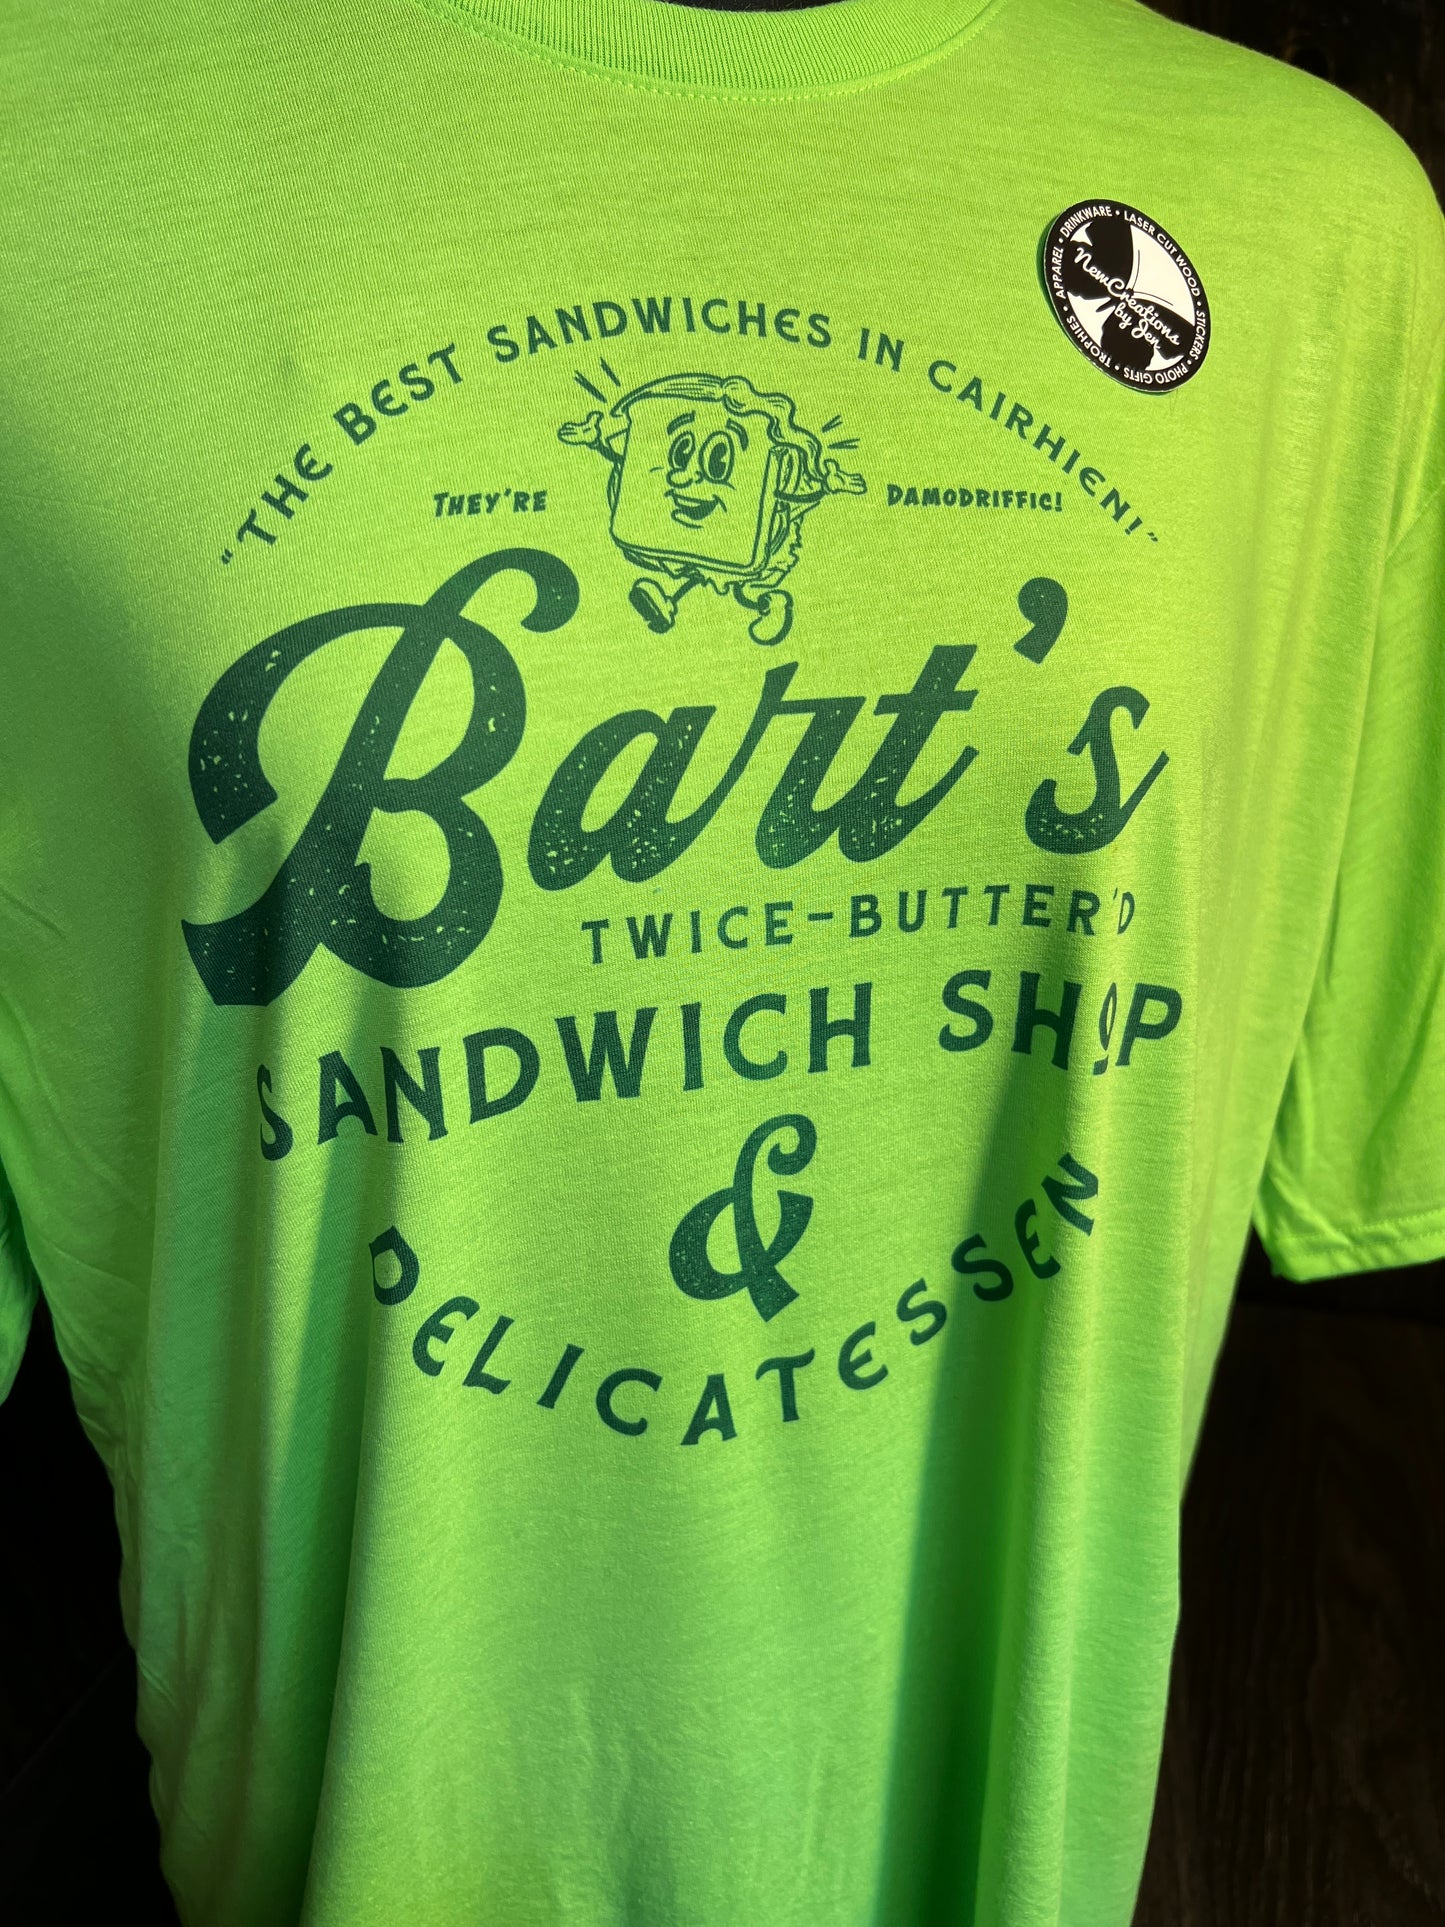 Bart's Sandwich Shop & Delicatessen - Wheel of Time Souvenir Lightweight Tees